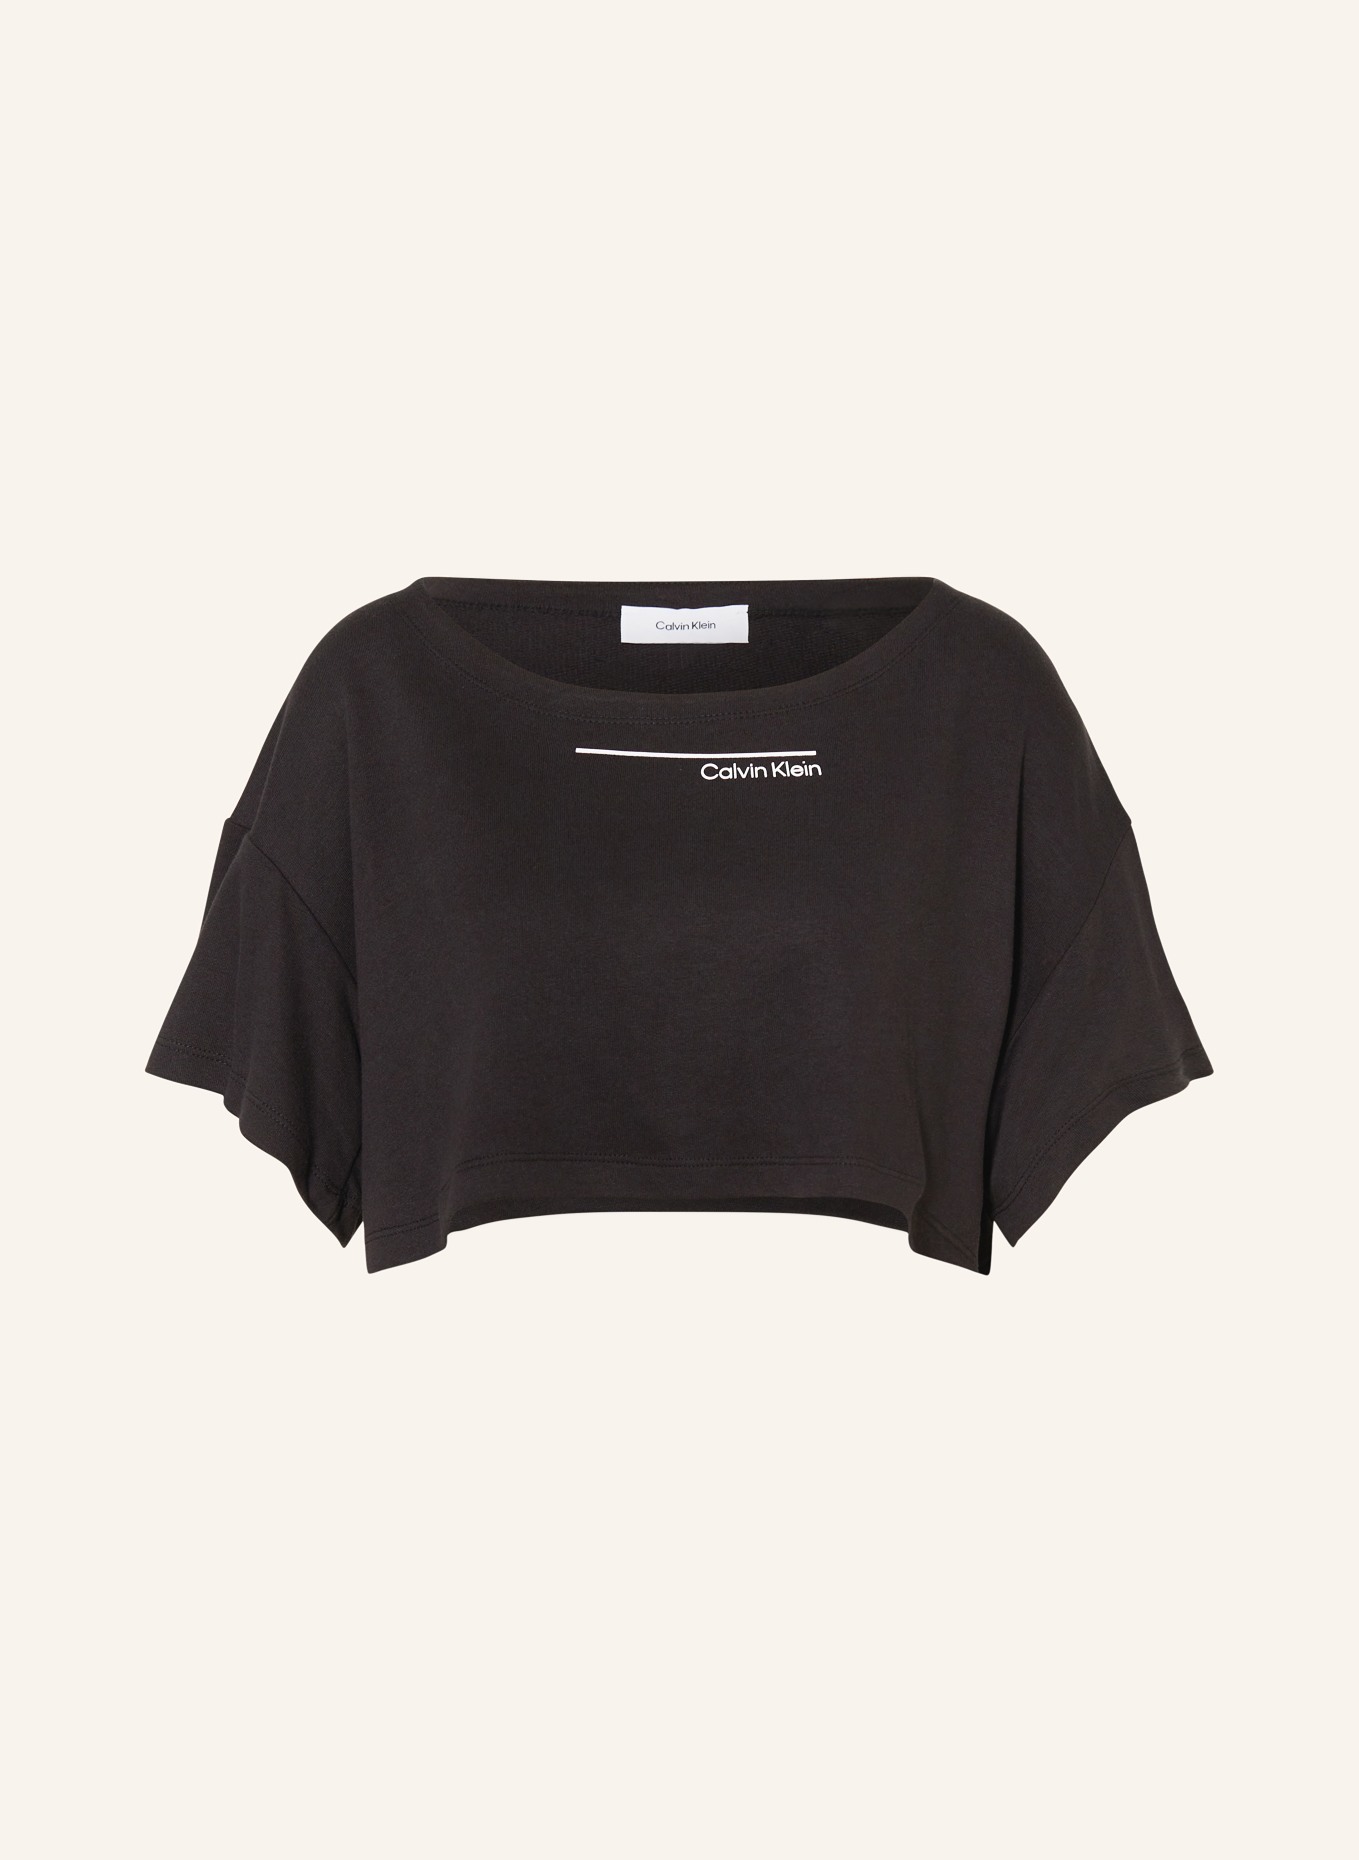 Calvin Klein Cropped-Shirt, Farbe: SCHWARZ (Bild 1)